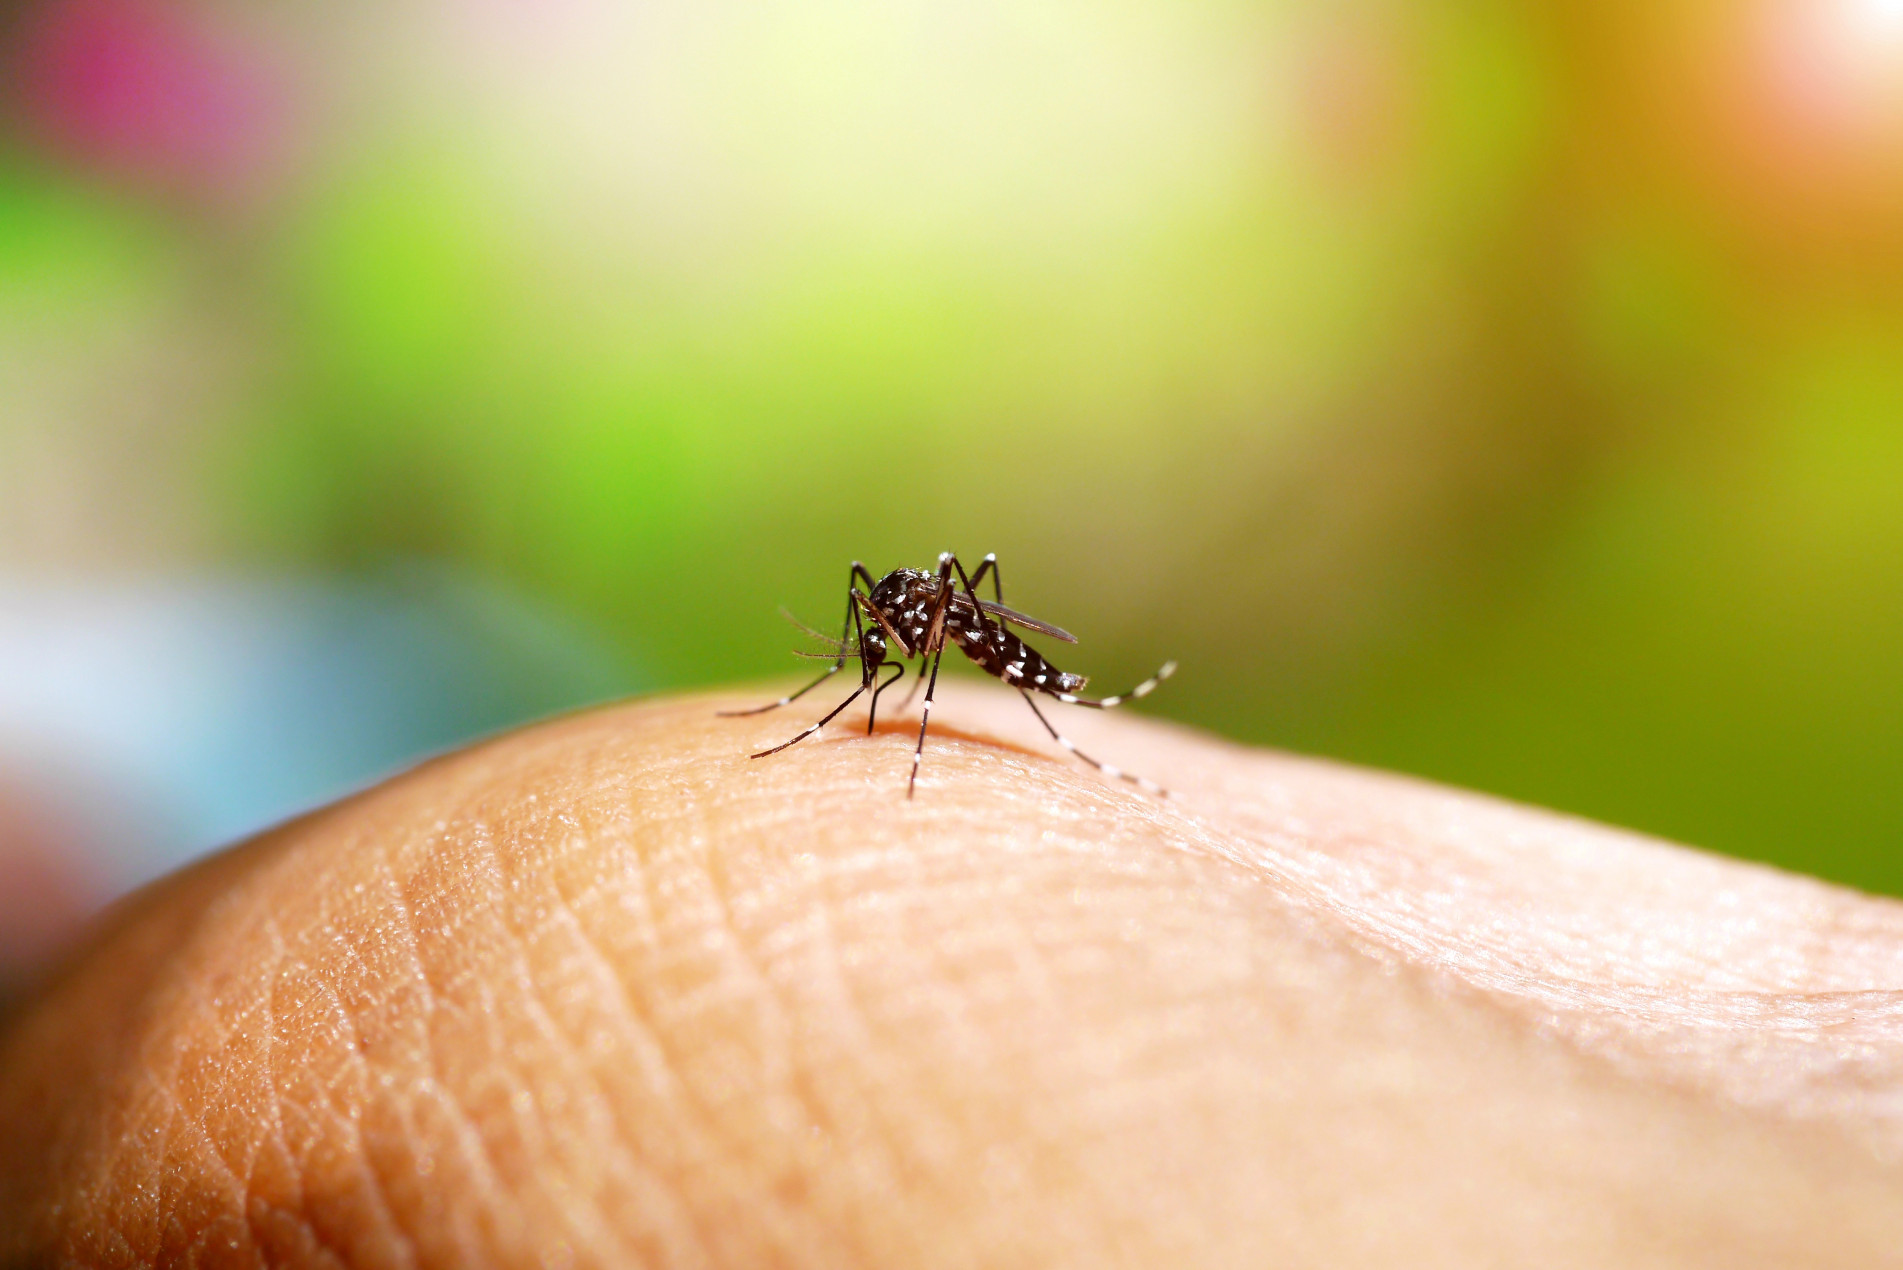 O Ministério da Saúde vai enviar a vacina contra a dengue para 521 municípios selecionados  